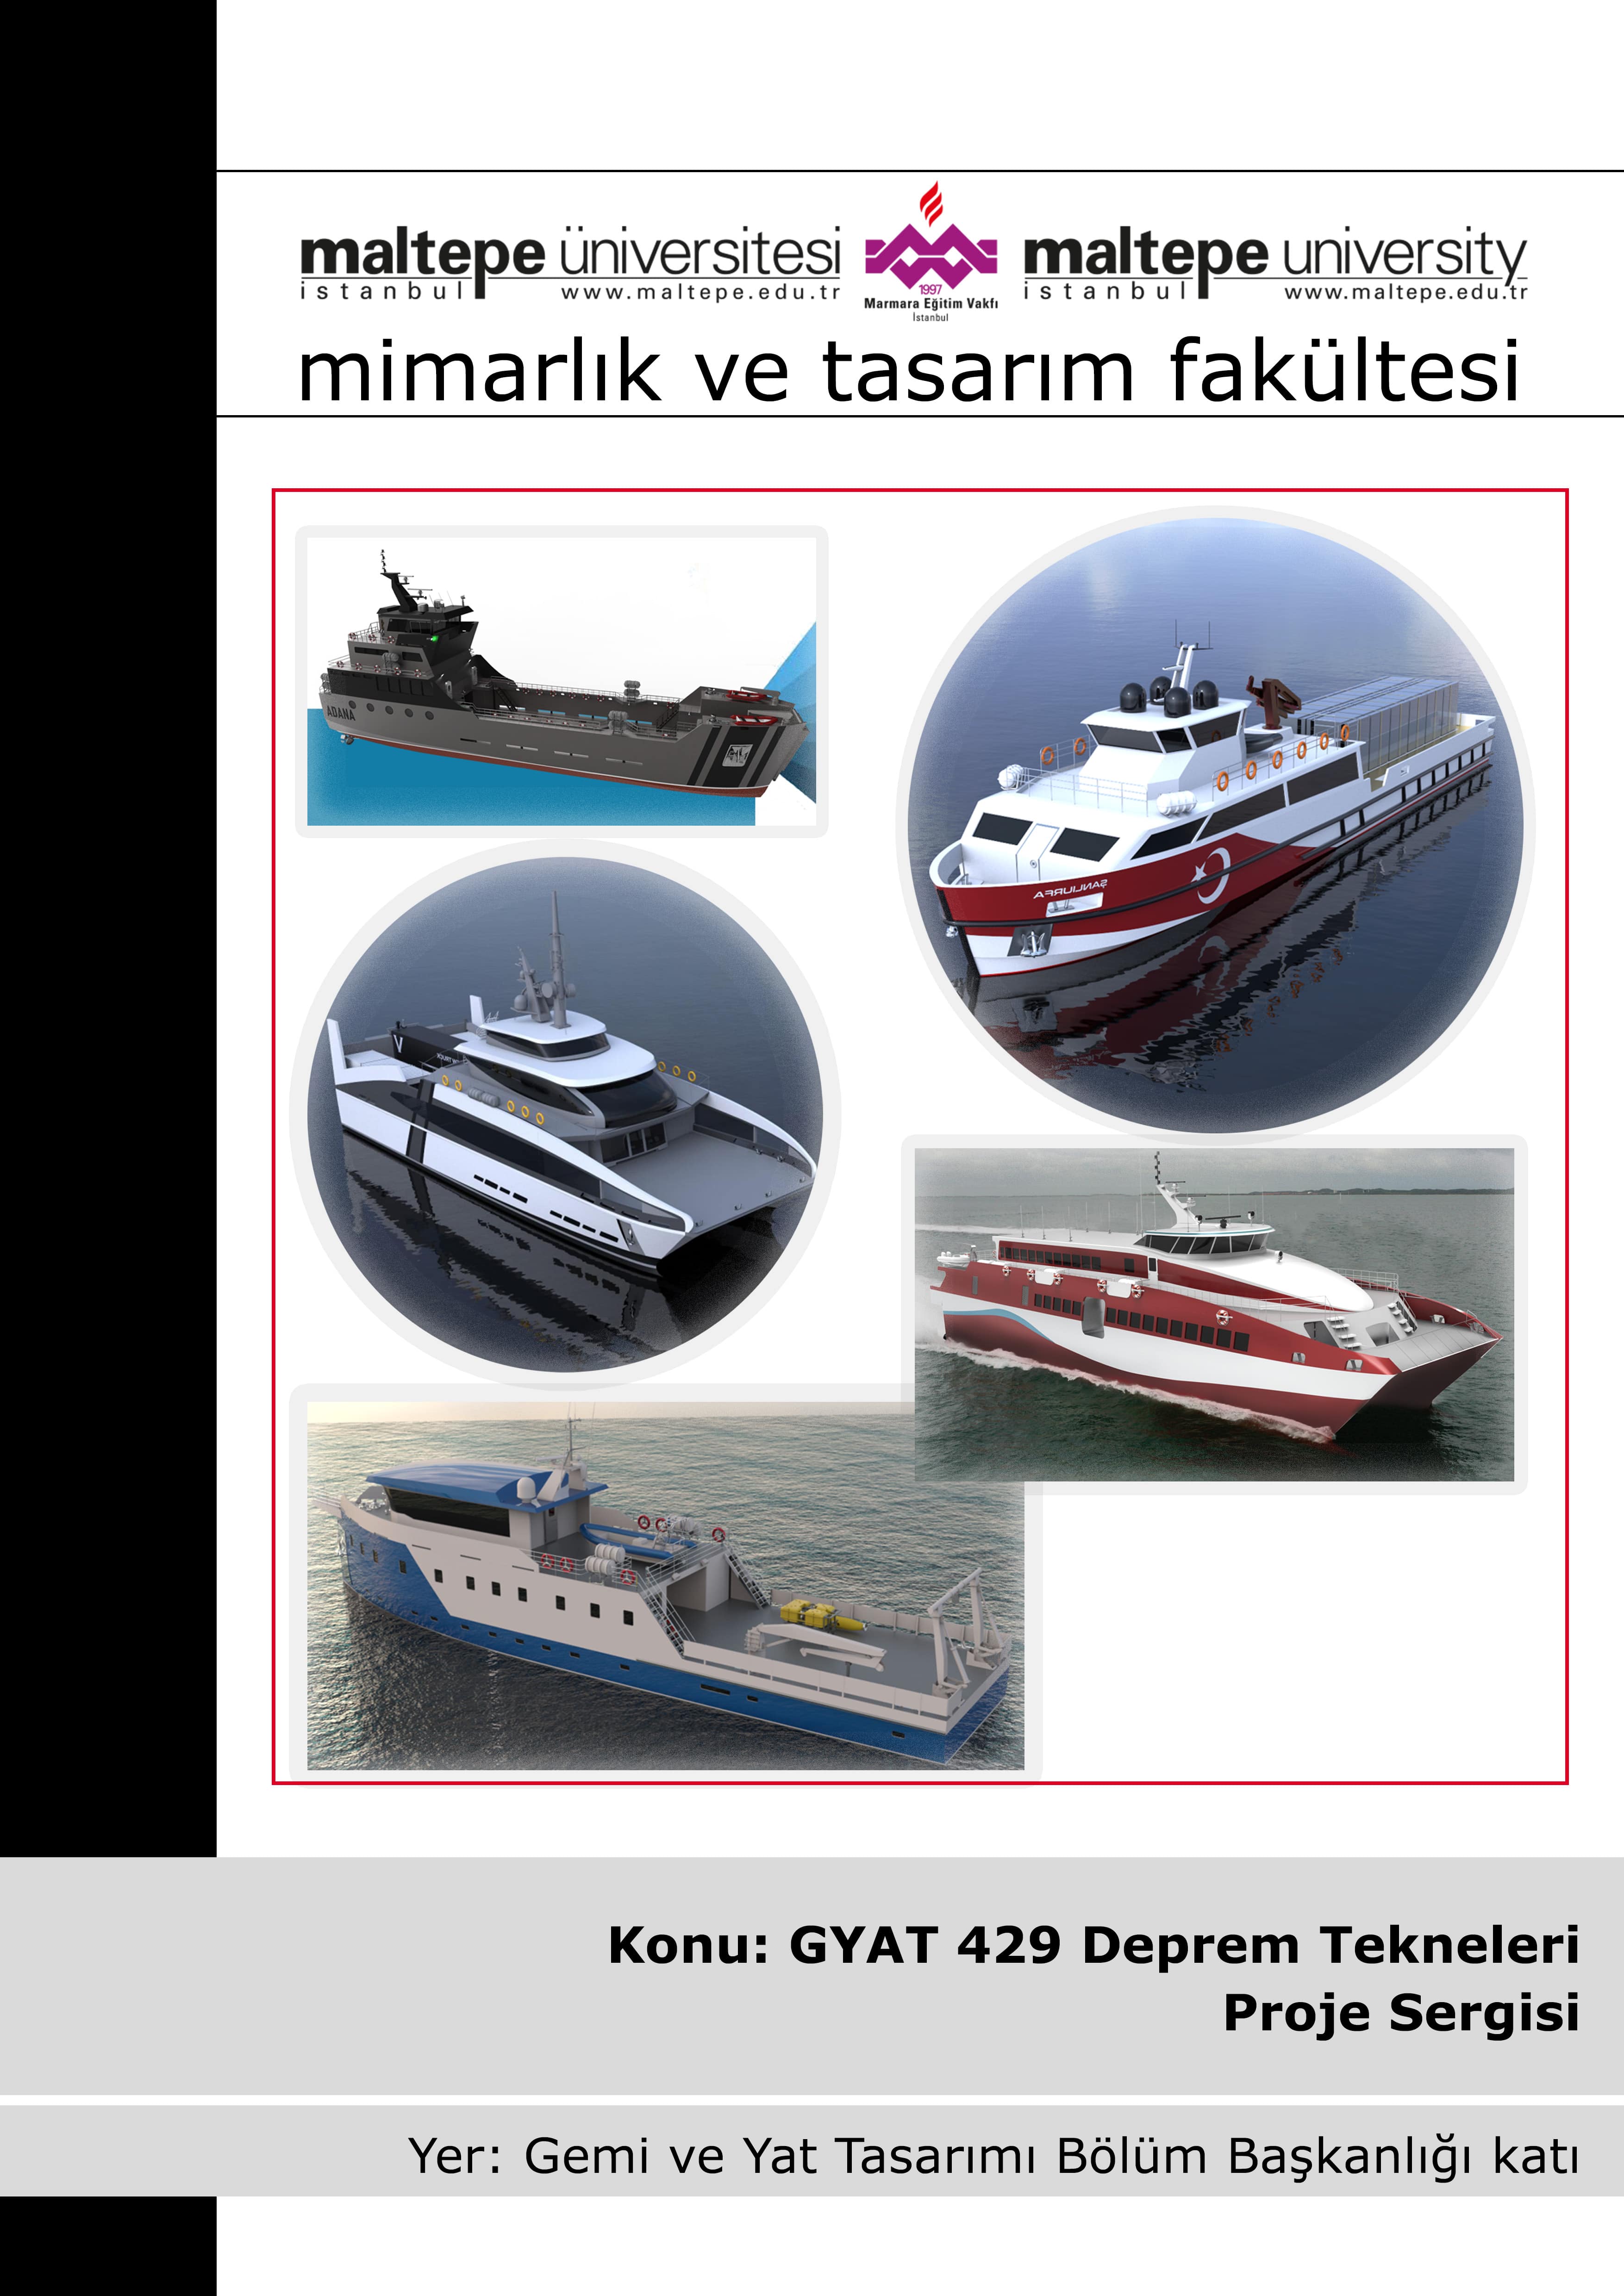 GYAT 429 Deprem Tekneleri Projeleri Sergisi